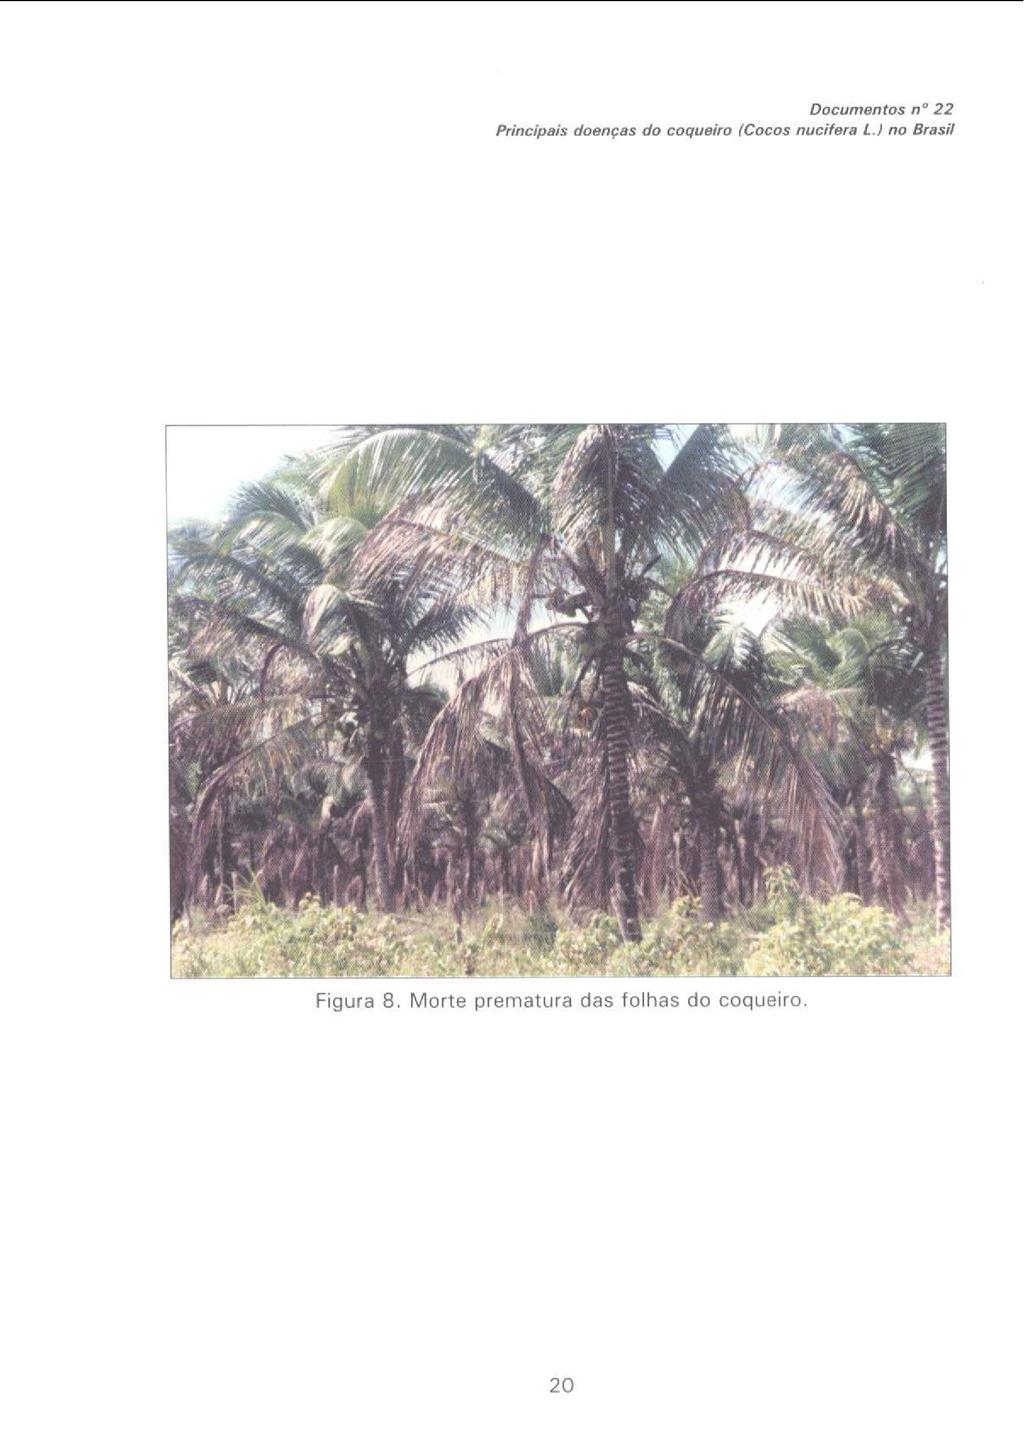 DOCumentos O 22 Princ;pis doenças do coqueiro (Cocos nucifera